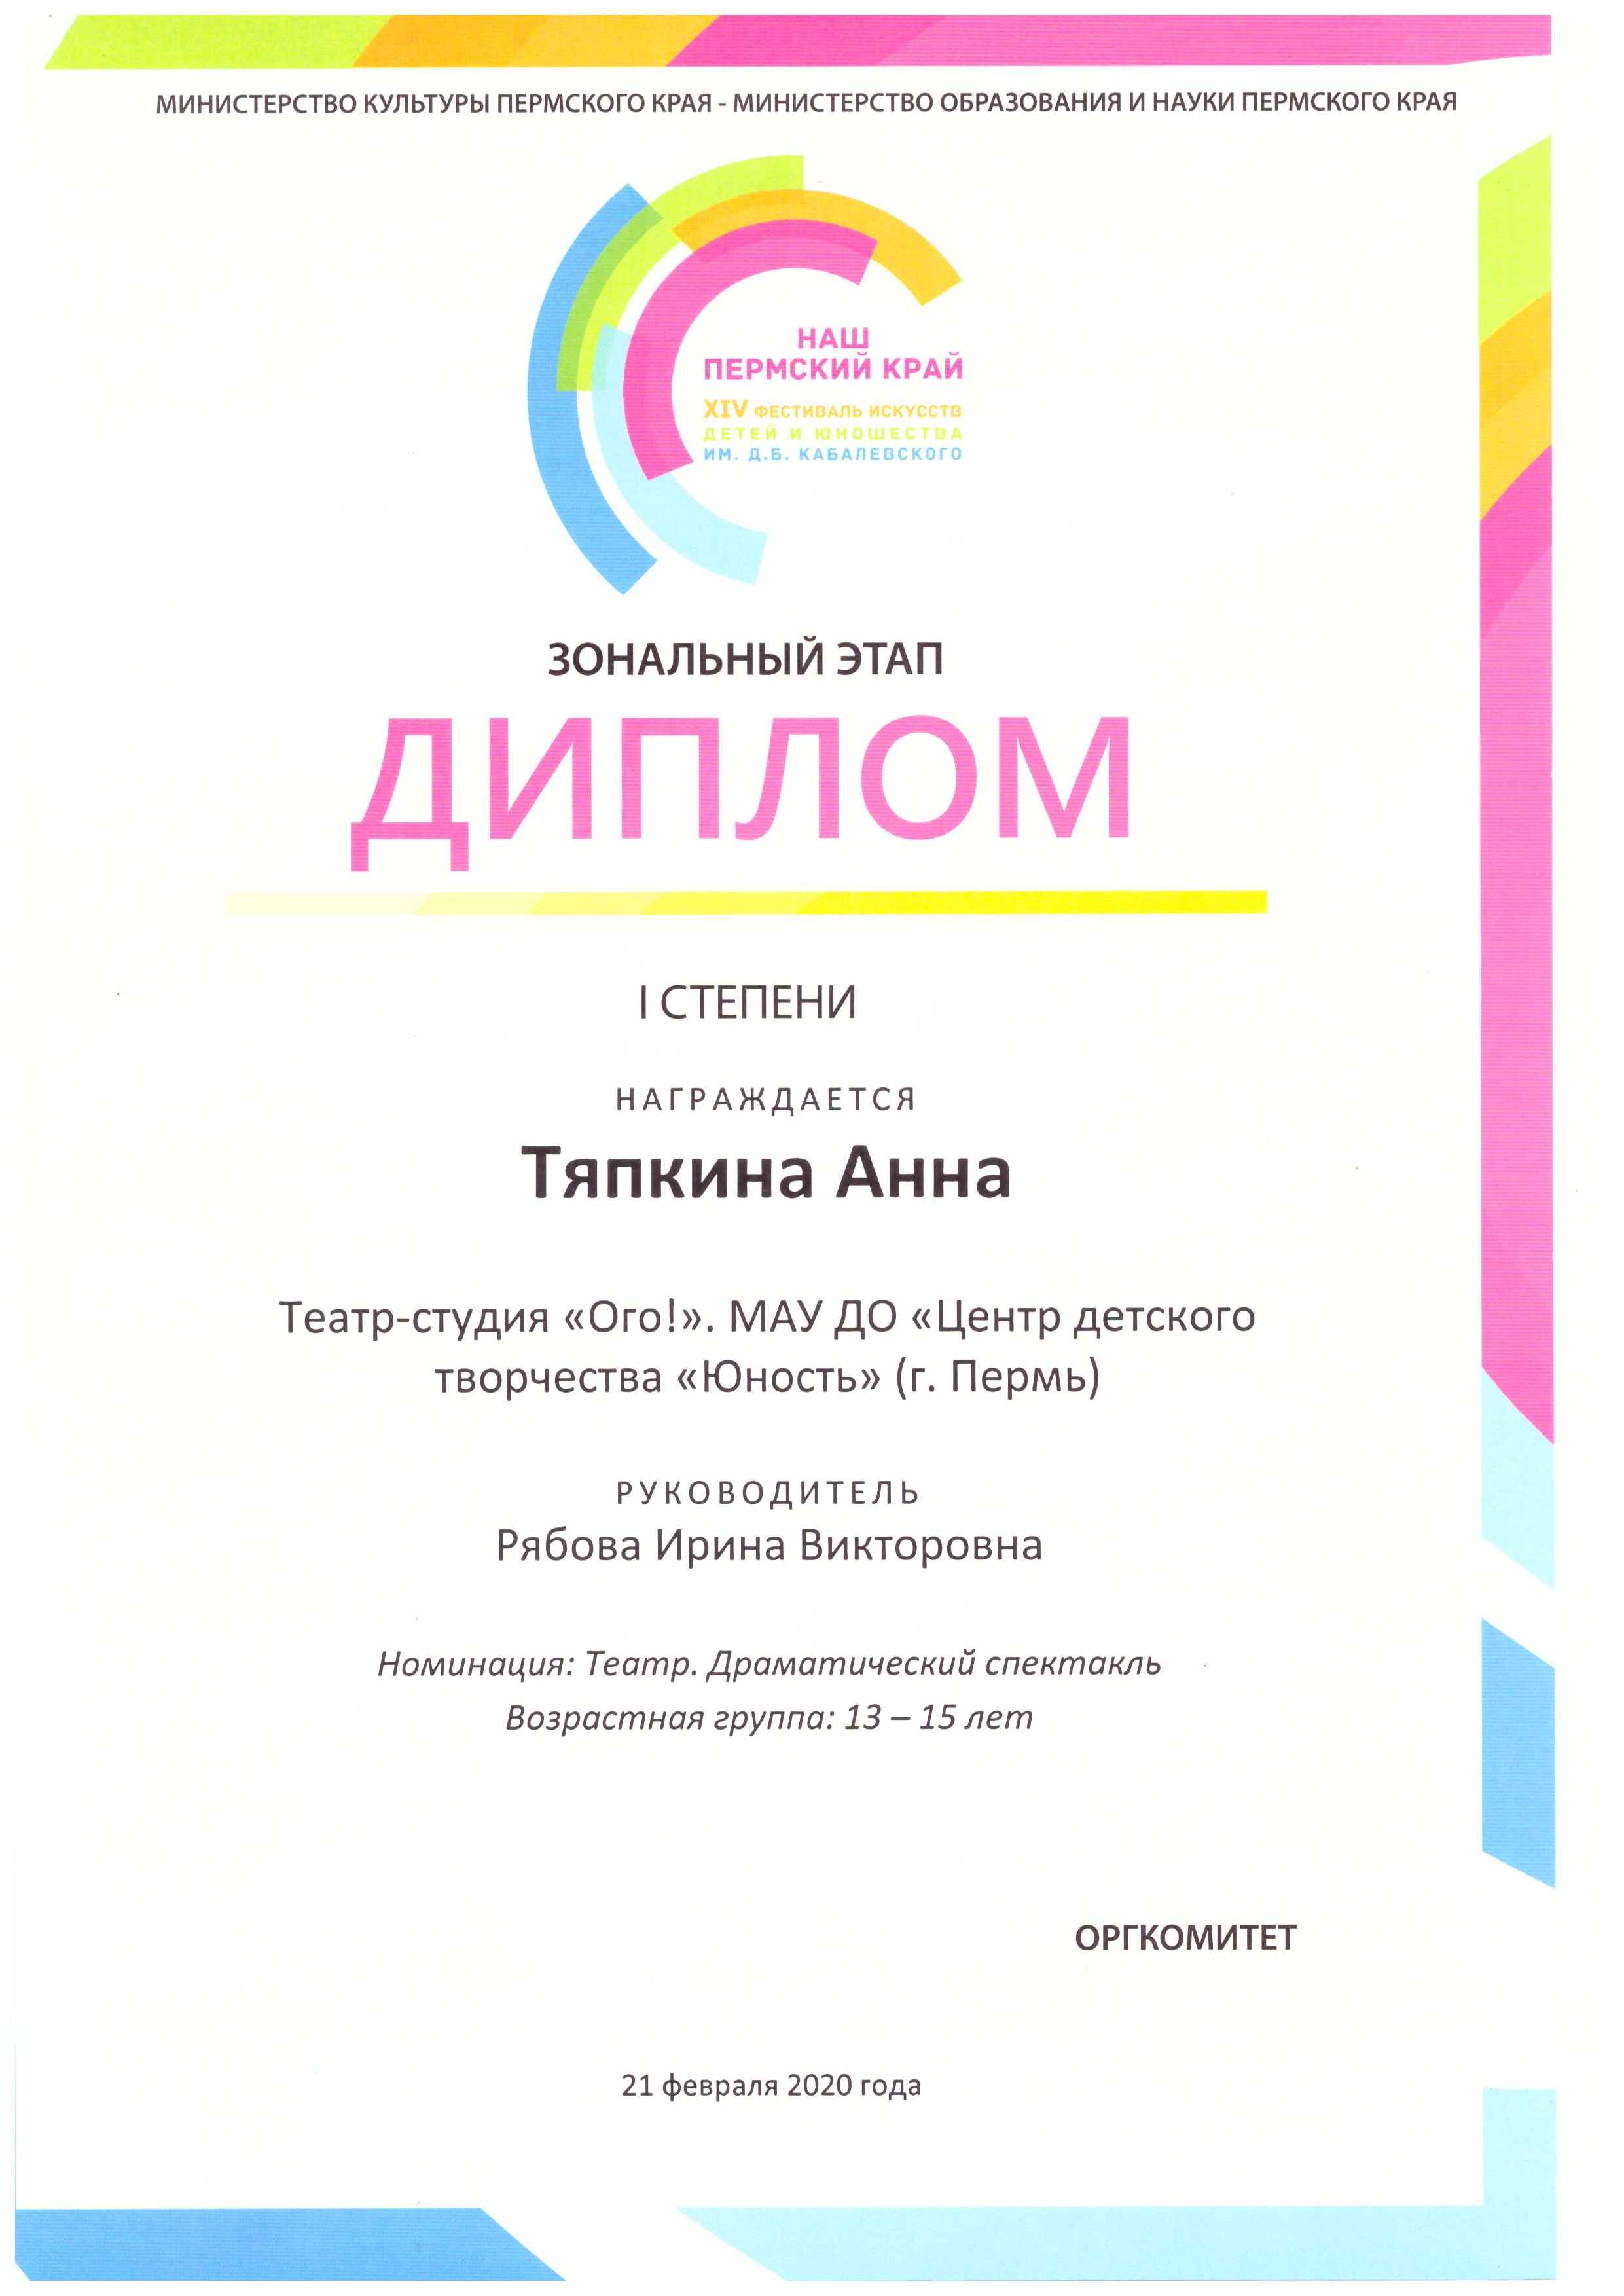 Диплом 1 степени краевого фестиваля искусств "Наш Пермский край"